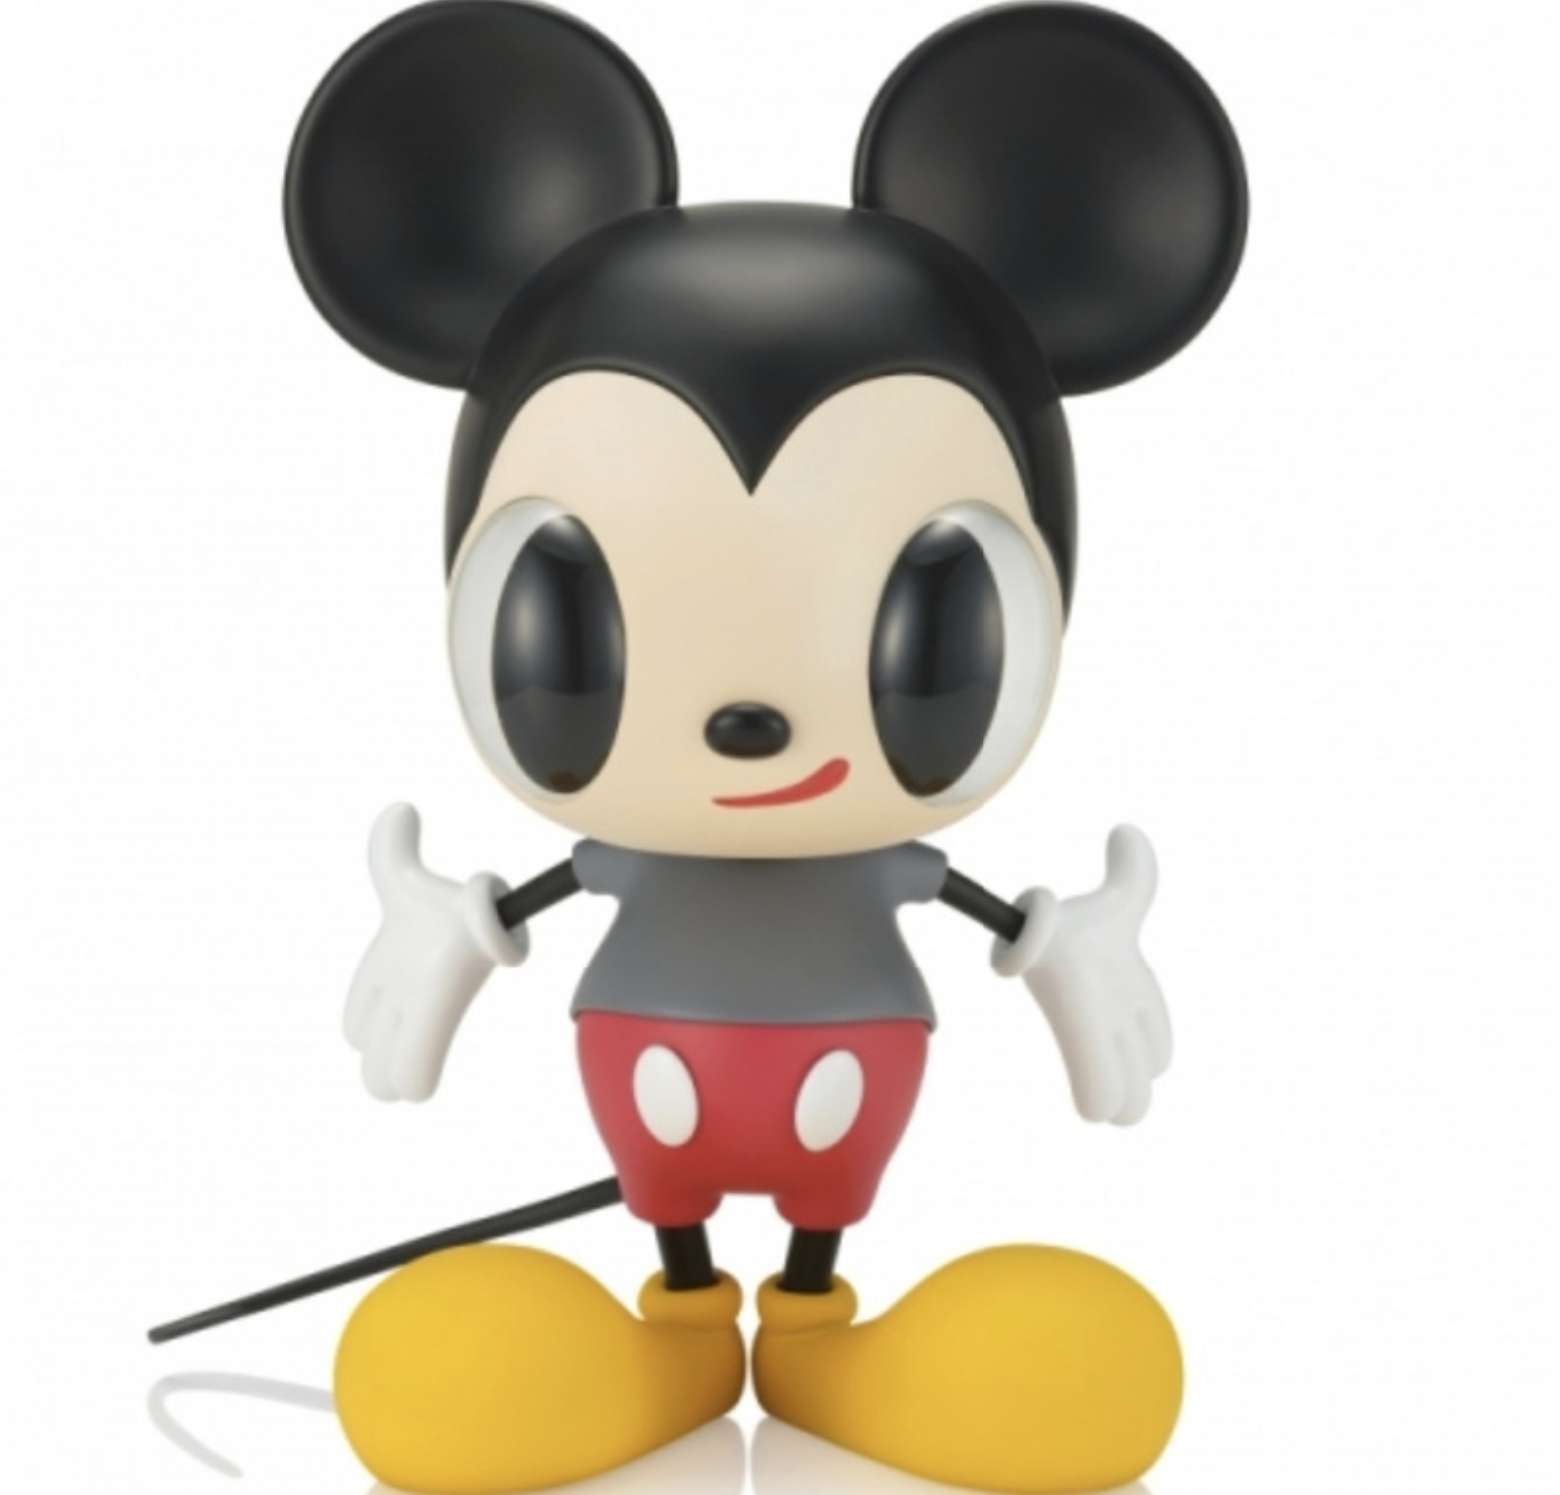 Disney Mickey Mouse Now & Future Sofubi Figure